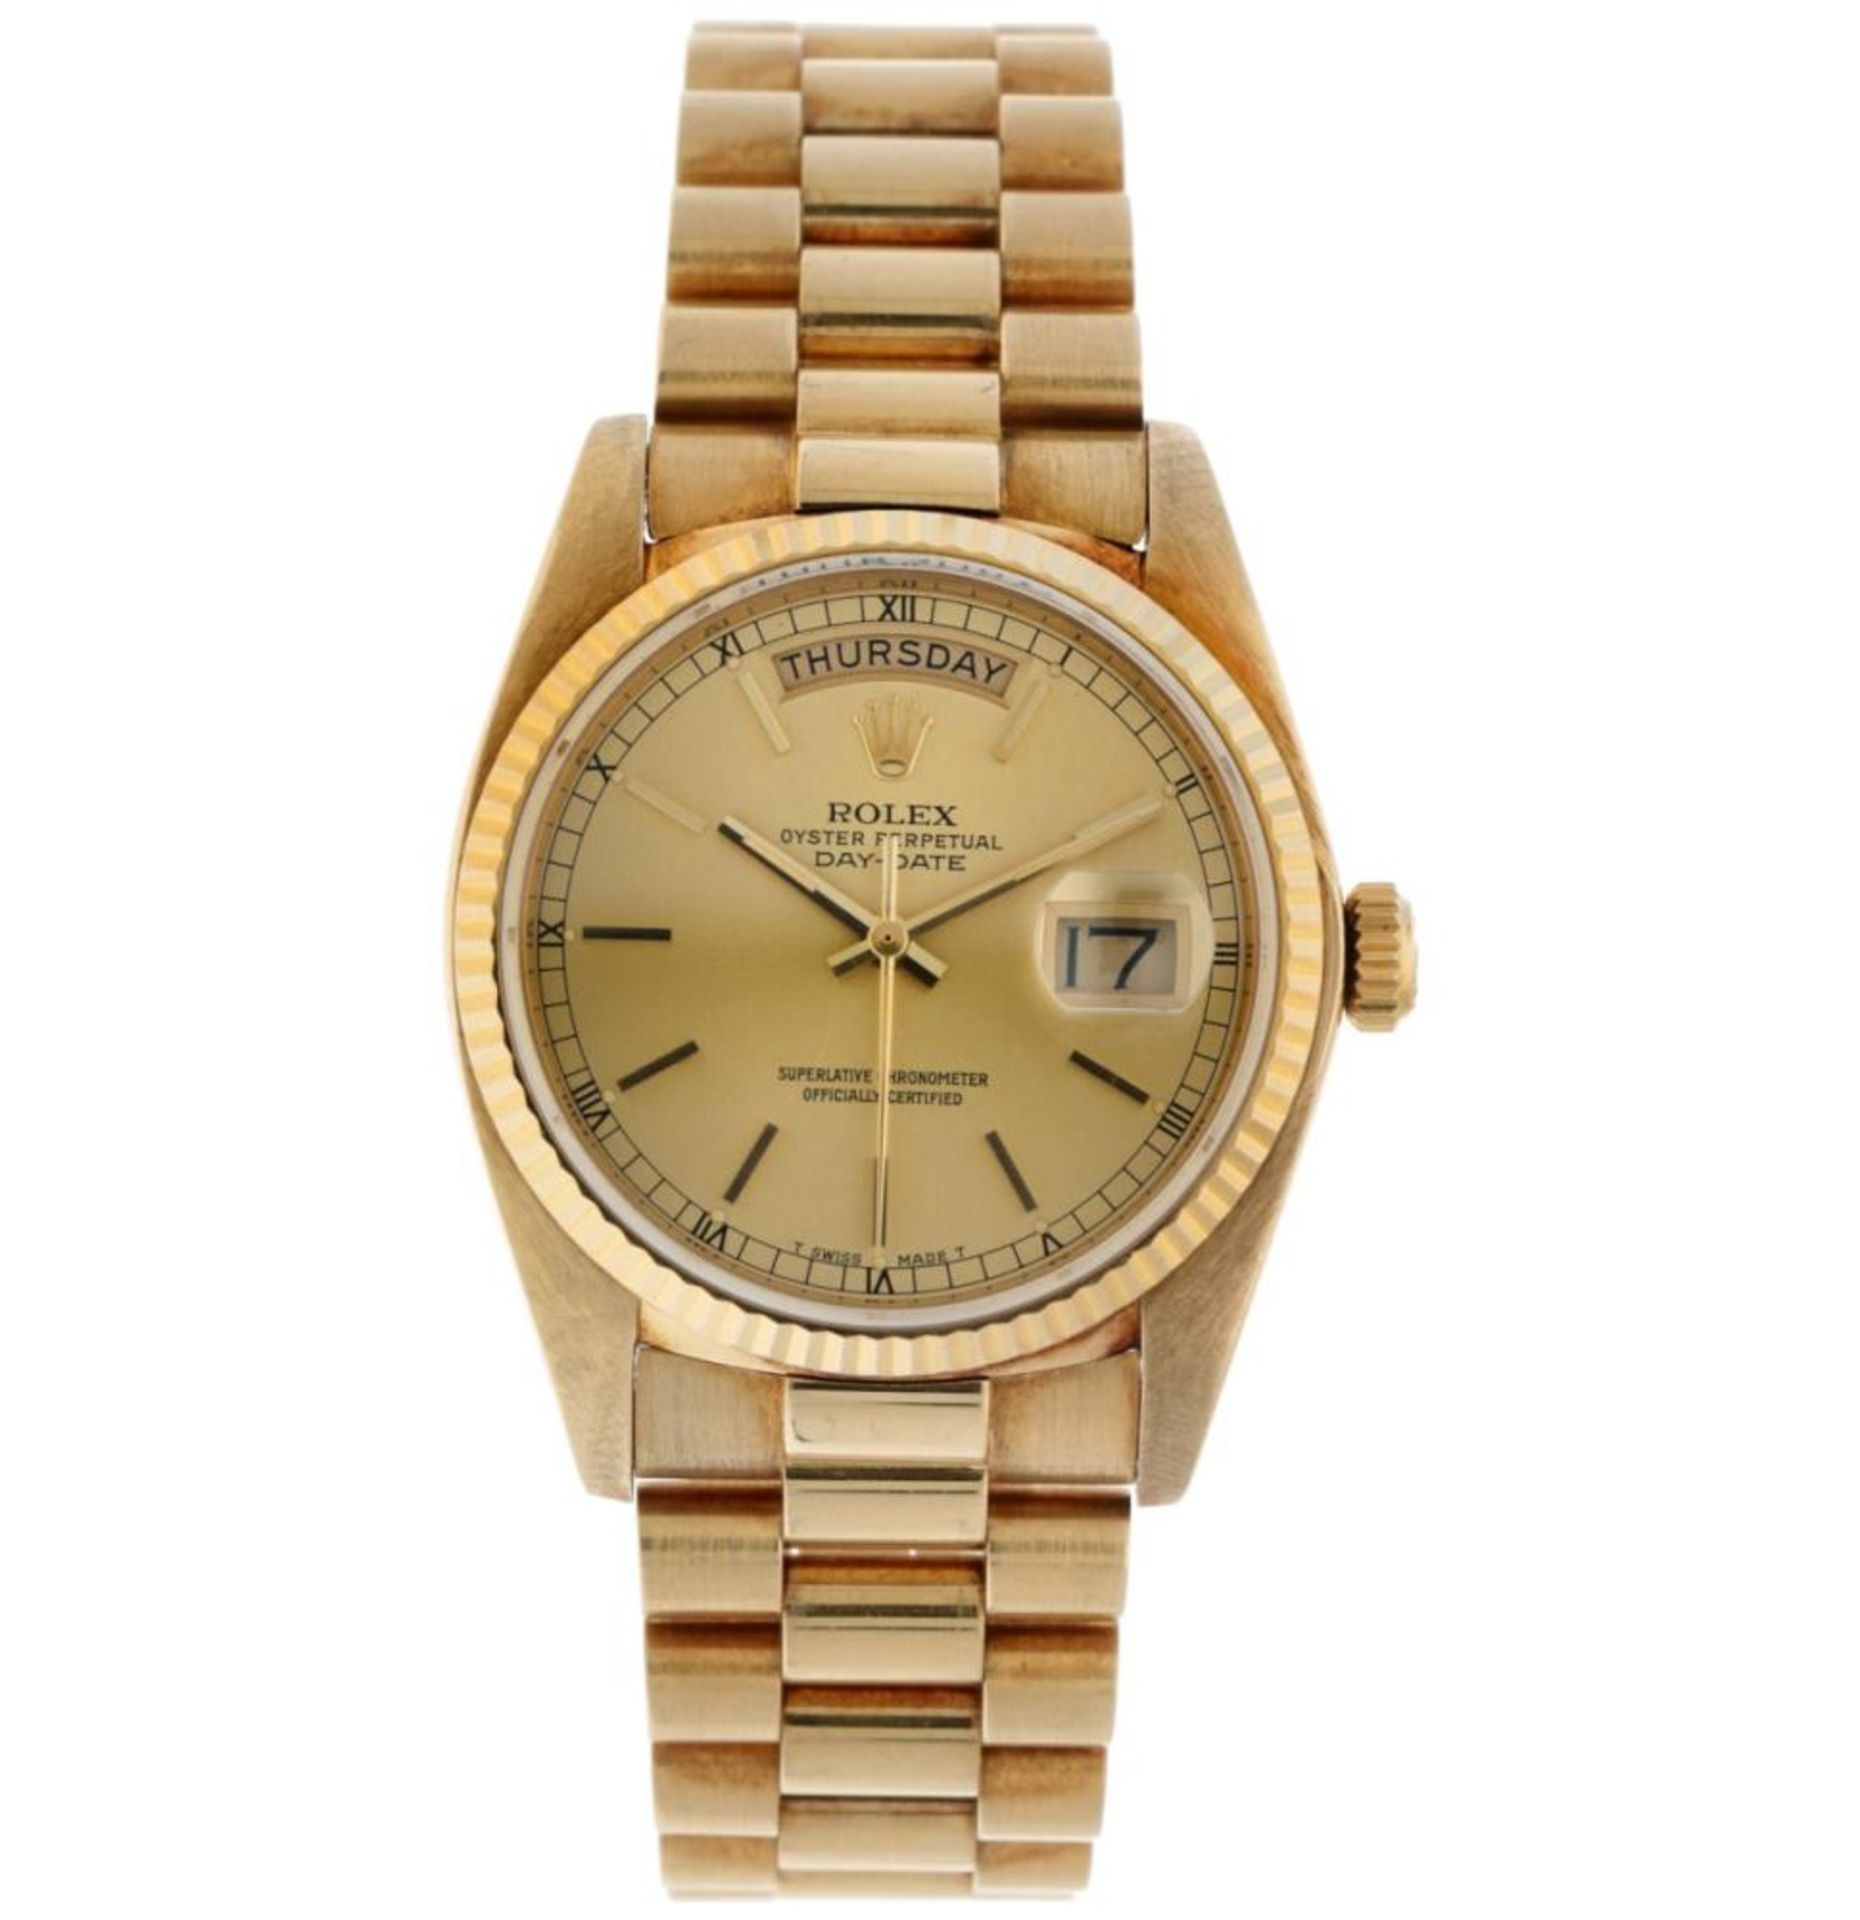 Rolex Day-Date 18038 - Men's watch - 1984.